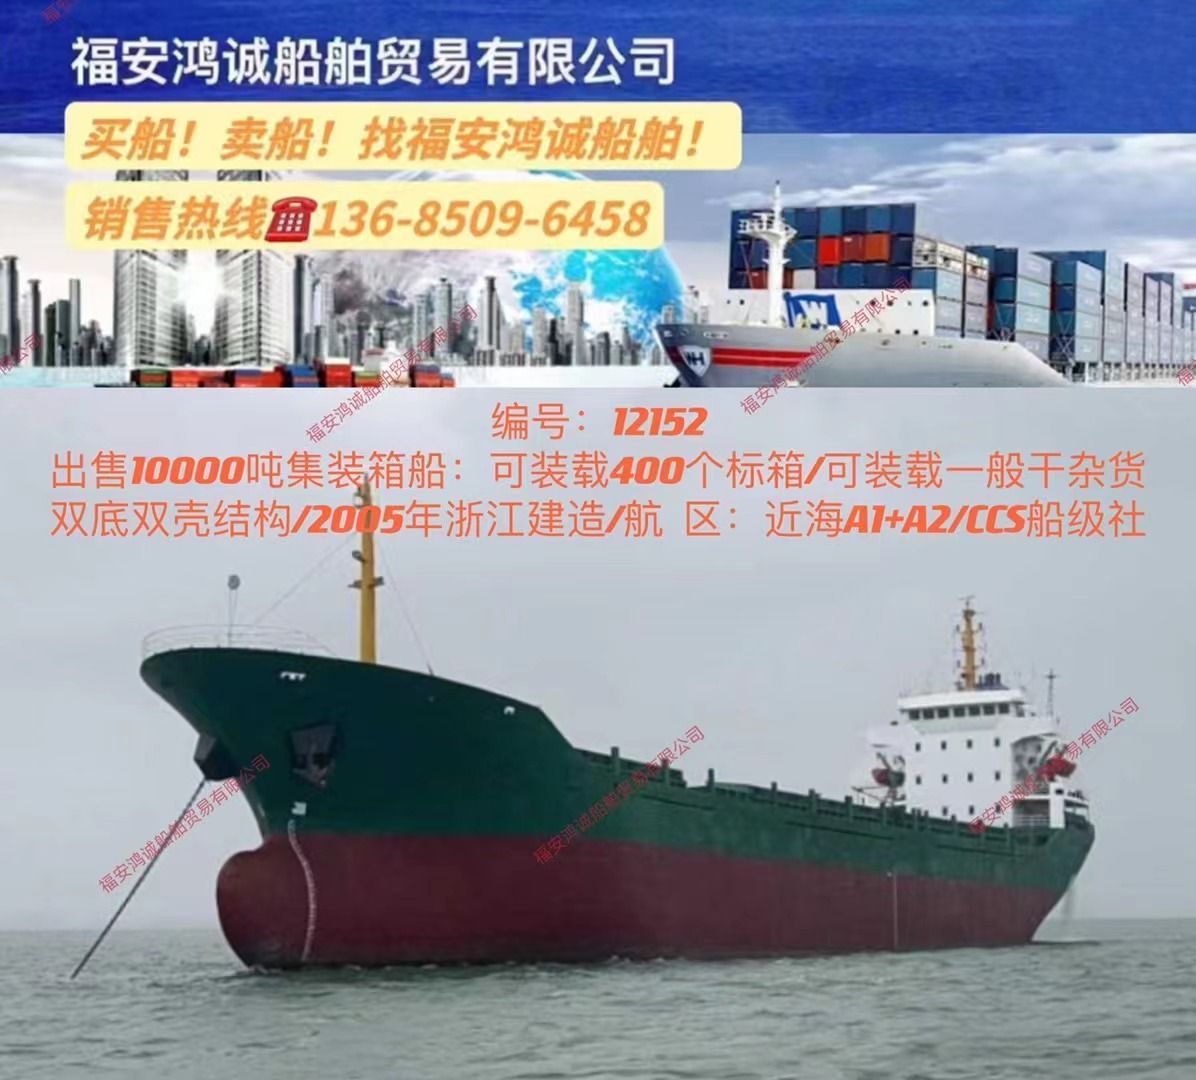 10000DWT集装箱船
05年中国造CCS船级